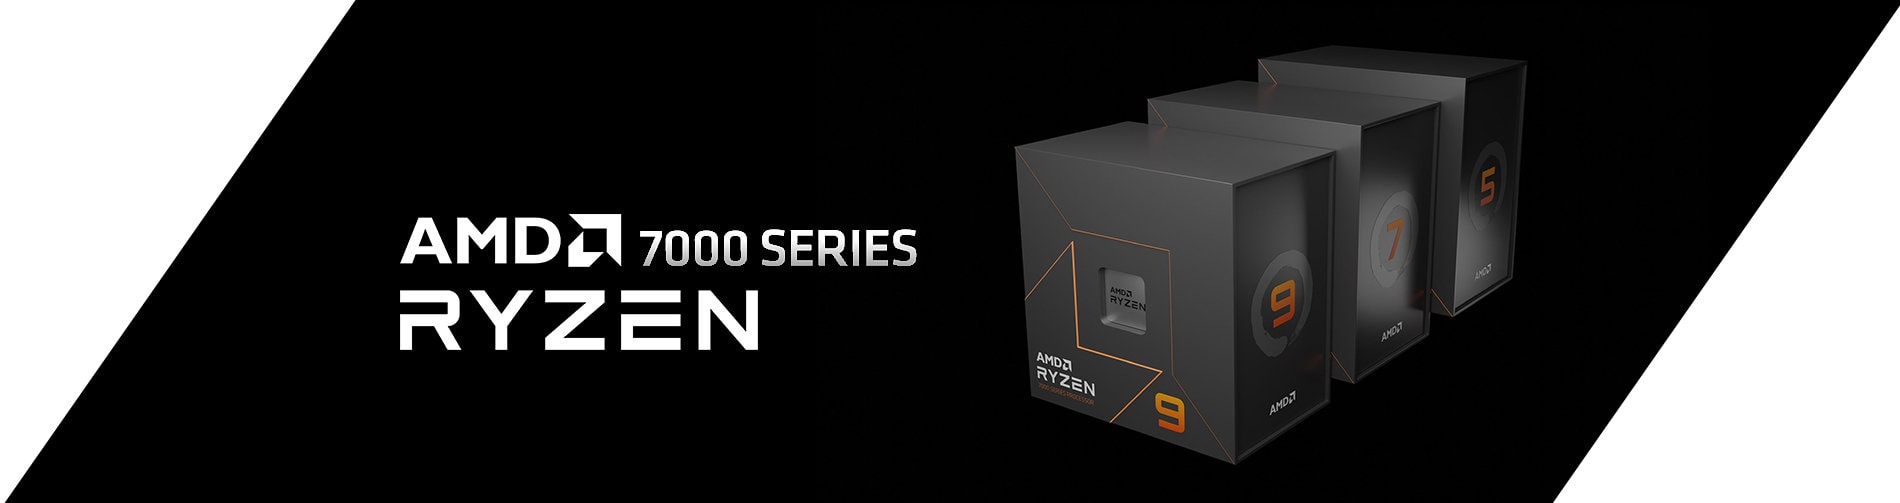 AMD Ryzen 7000 ora disponibile su CASEMOD